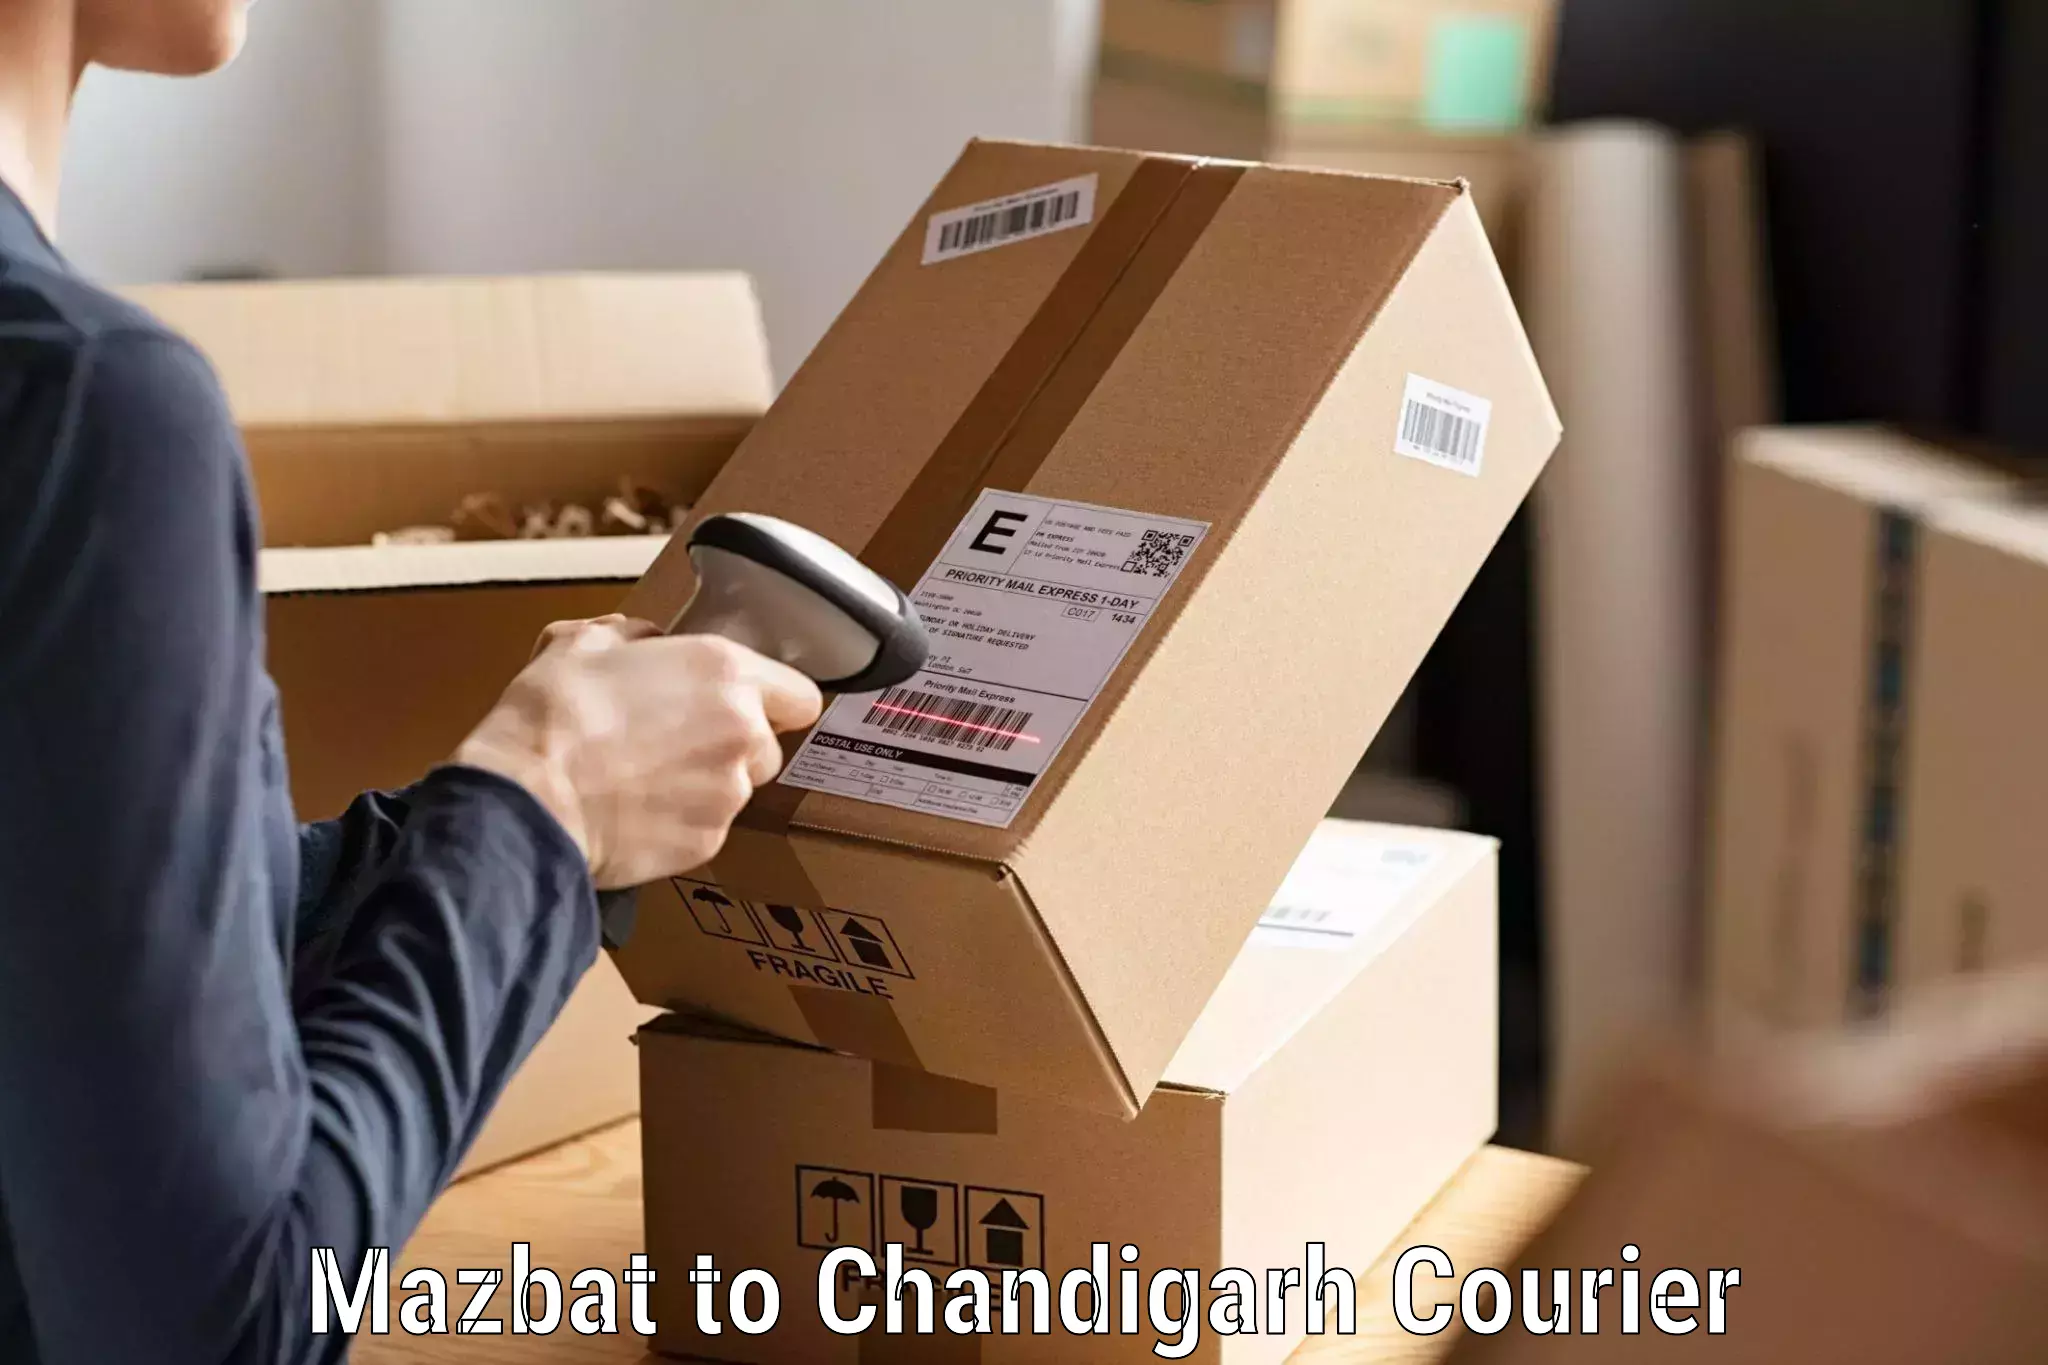 Professional courier handling Mazbat to Chandigarh